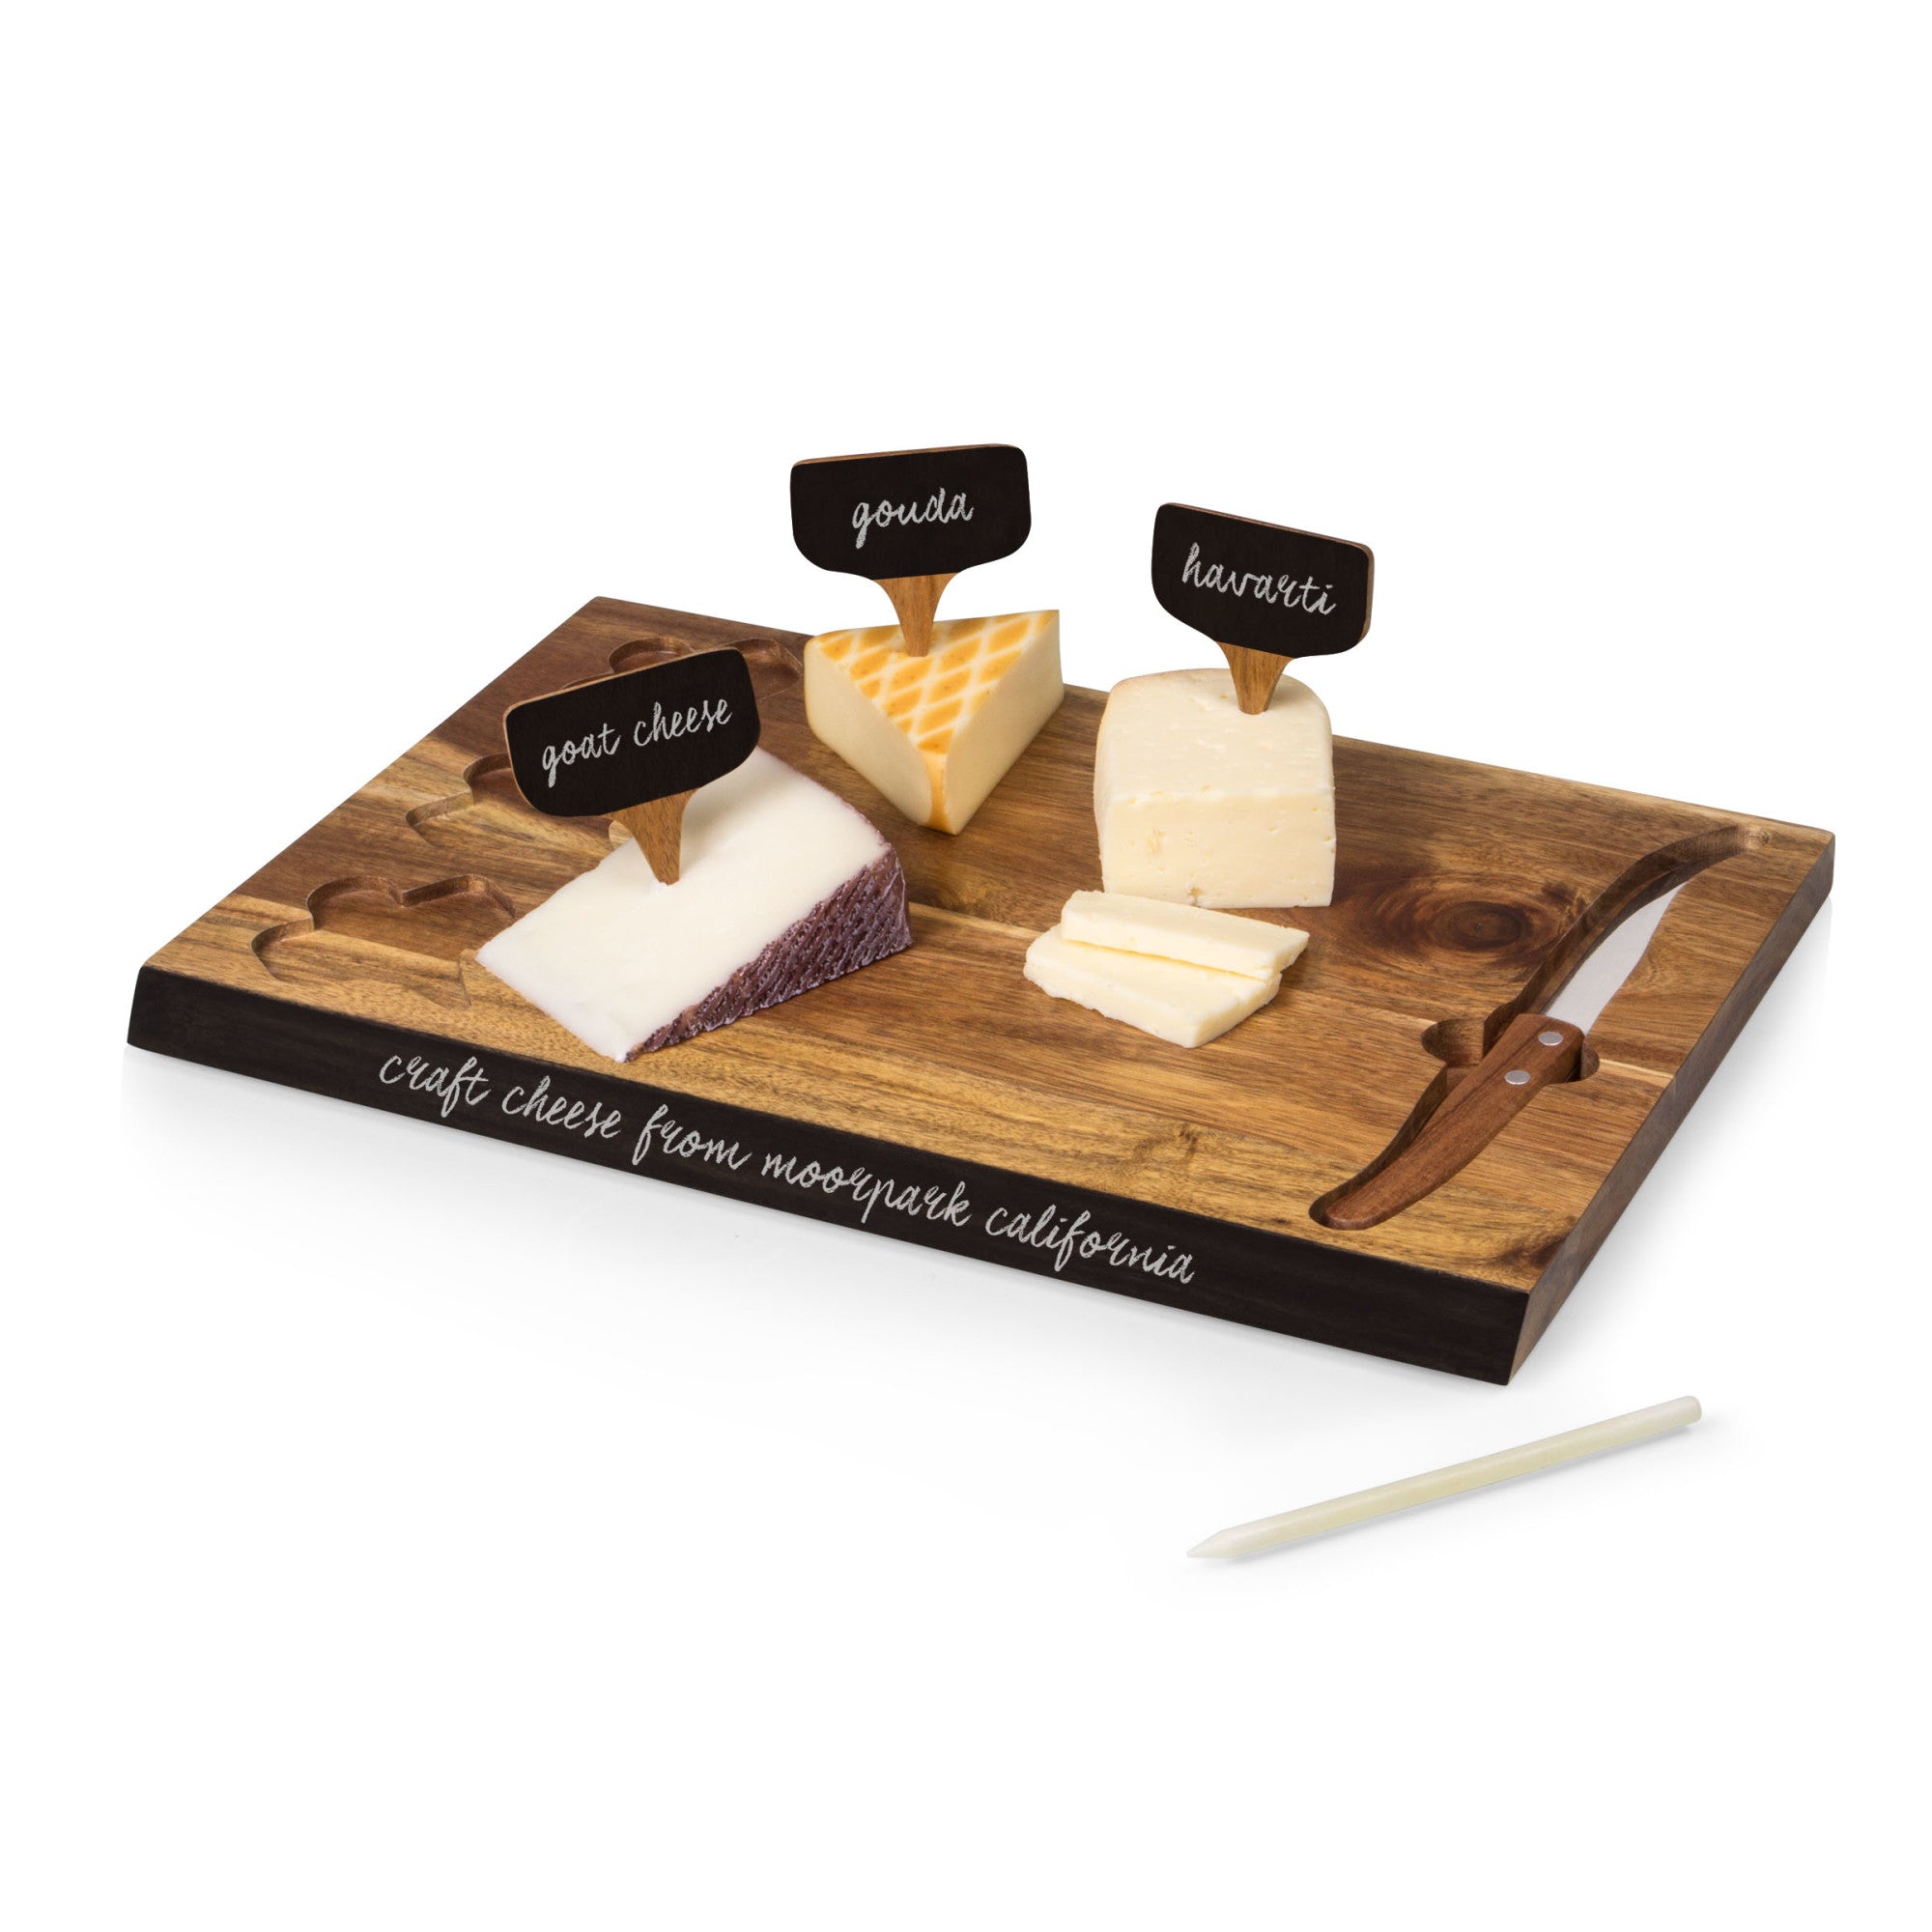 Texas A&M Aggies - Delio Acacia Cheese Cutting Board & Tools Set